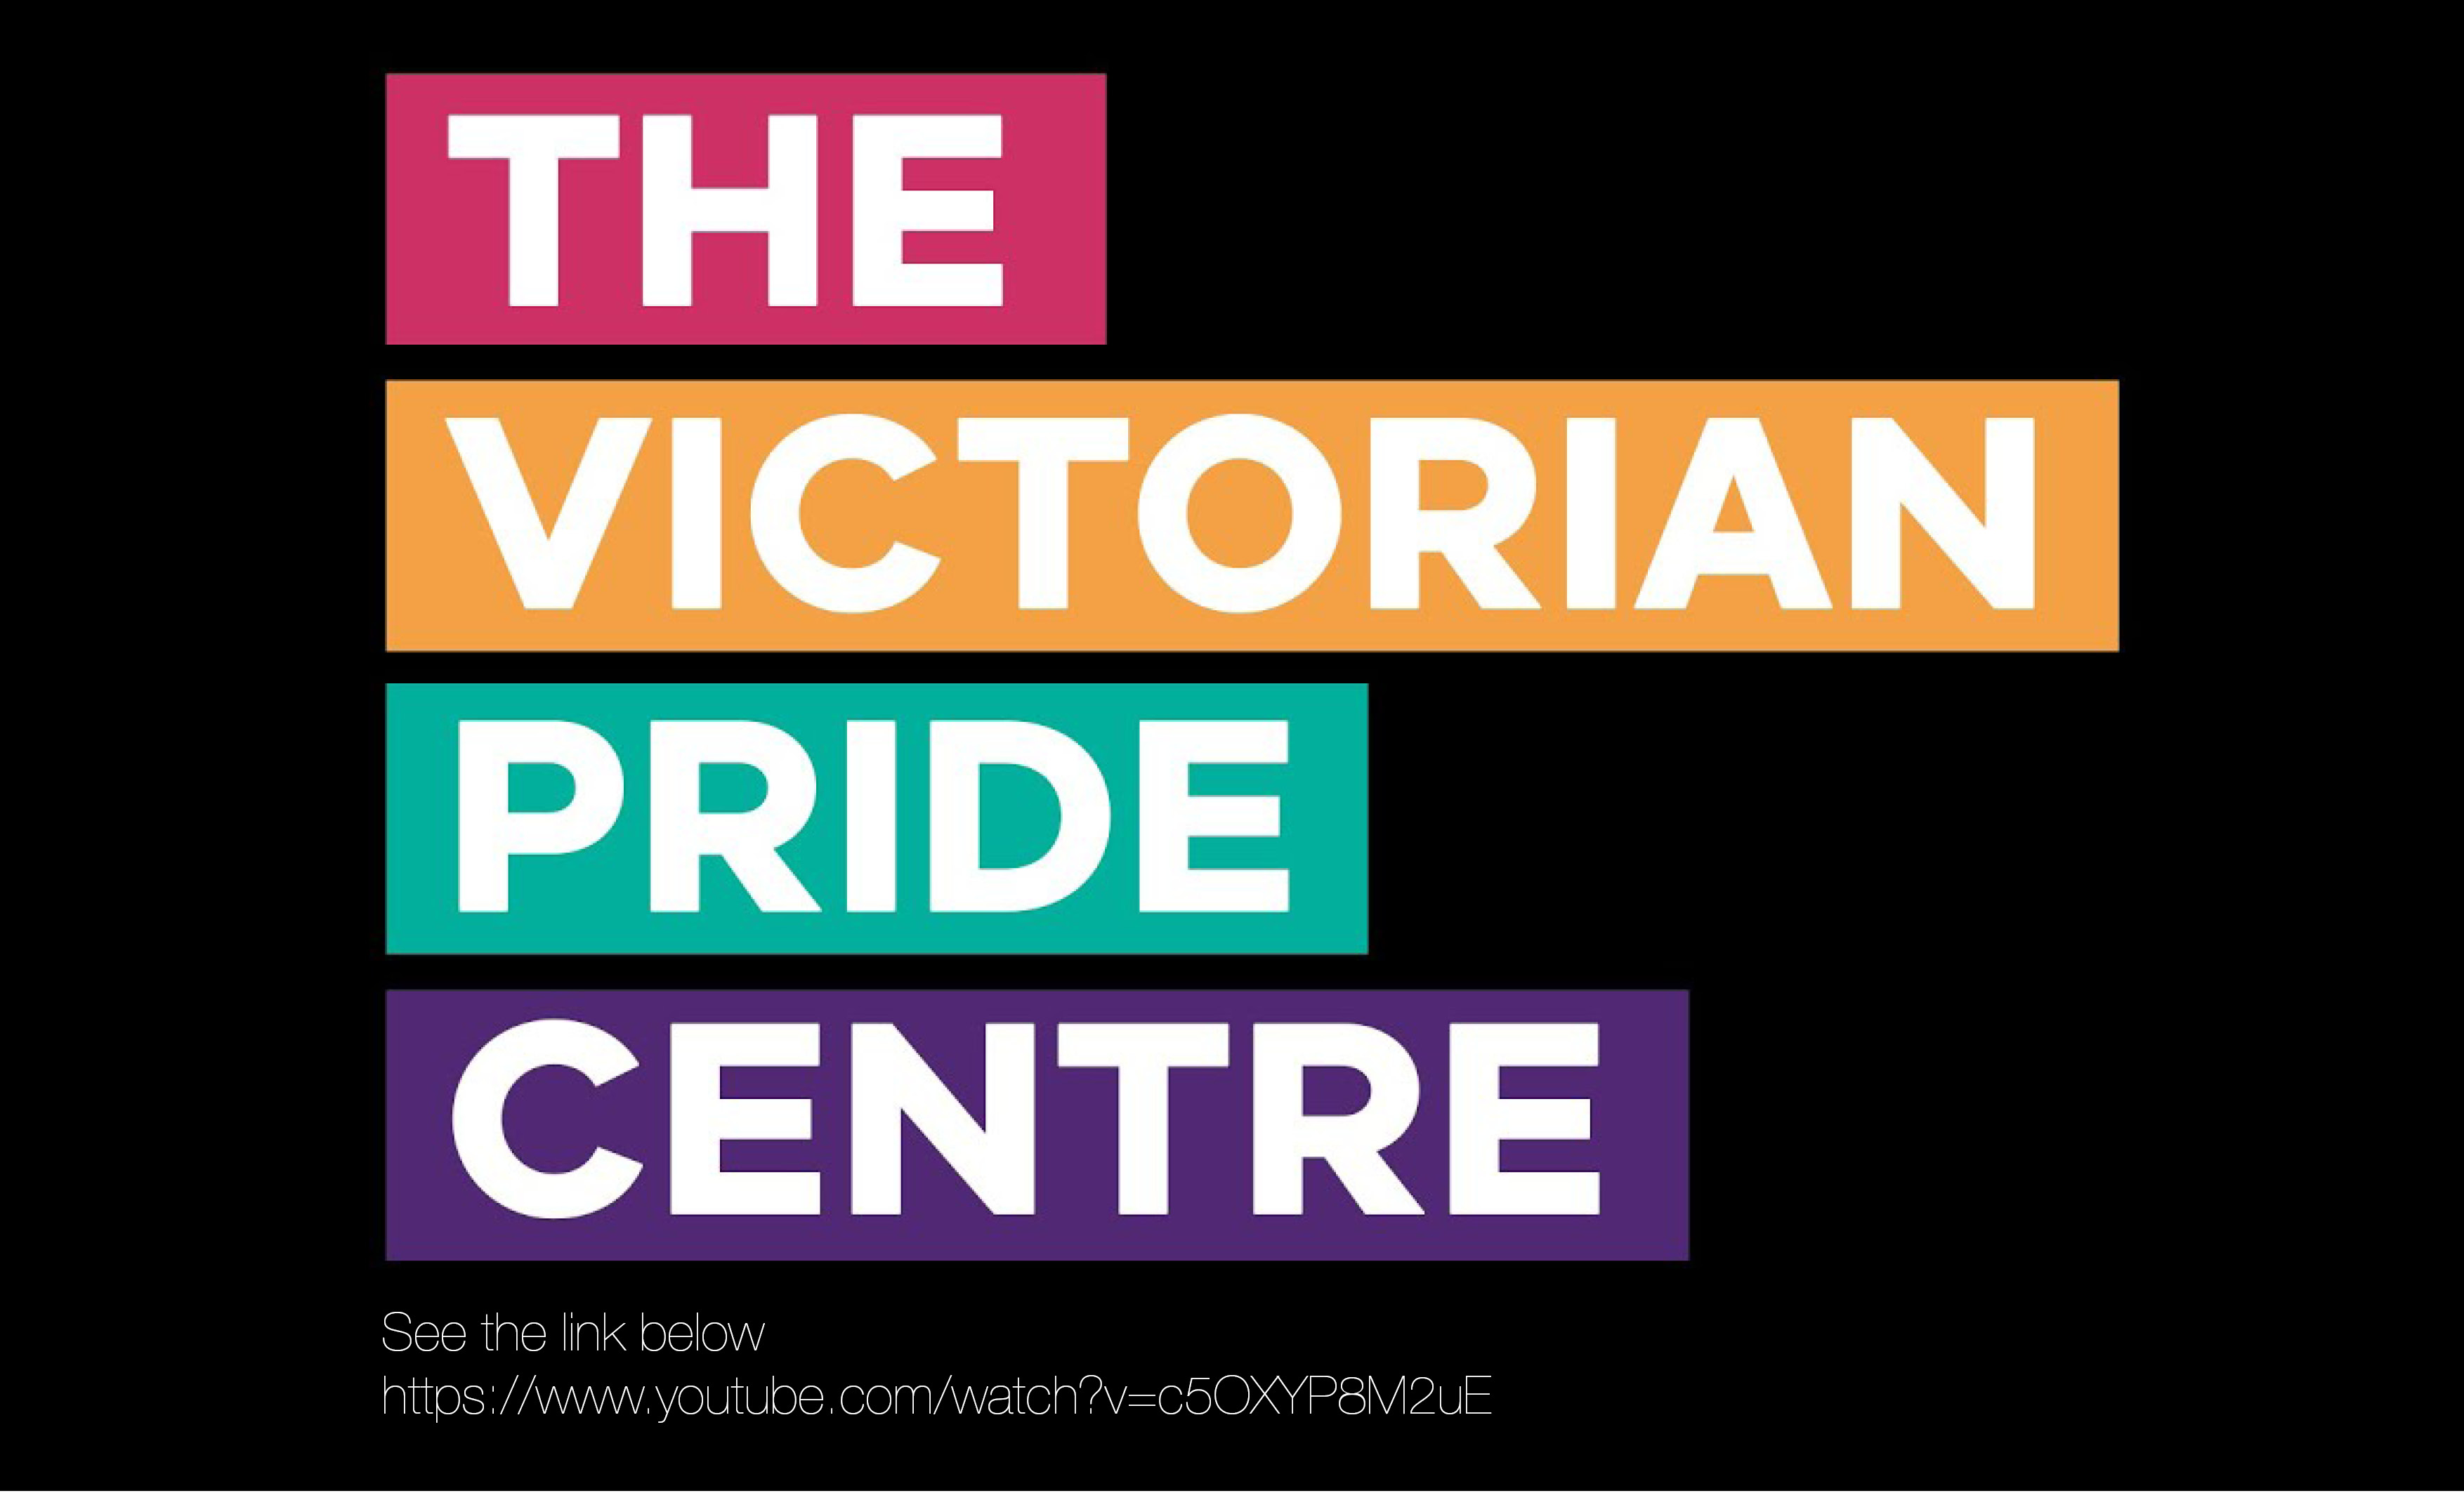 The Victorian Pride Centre